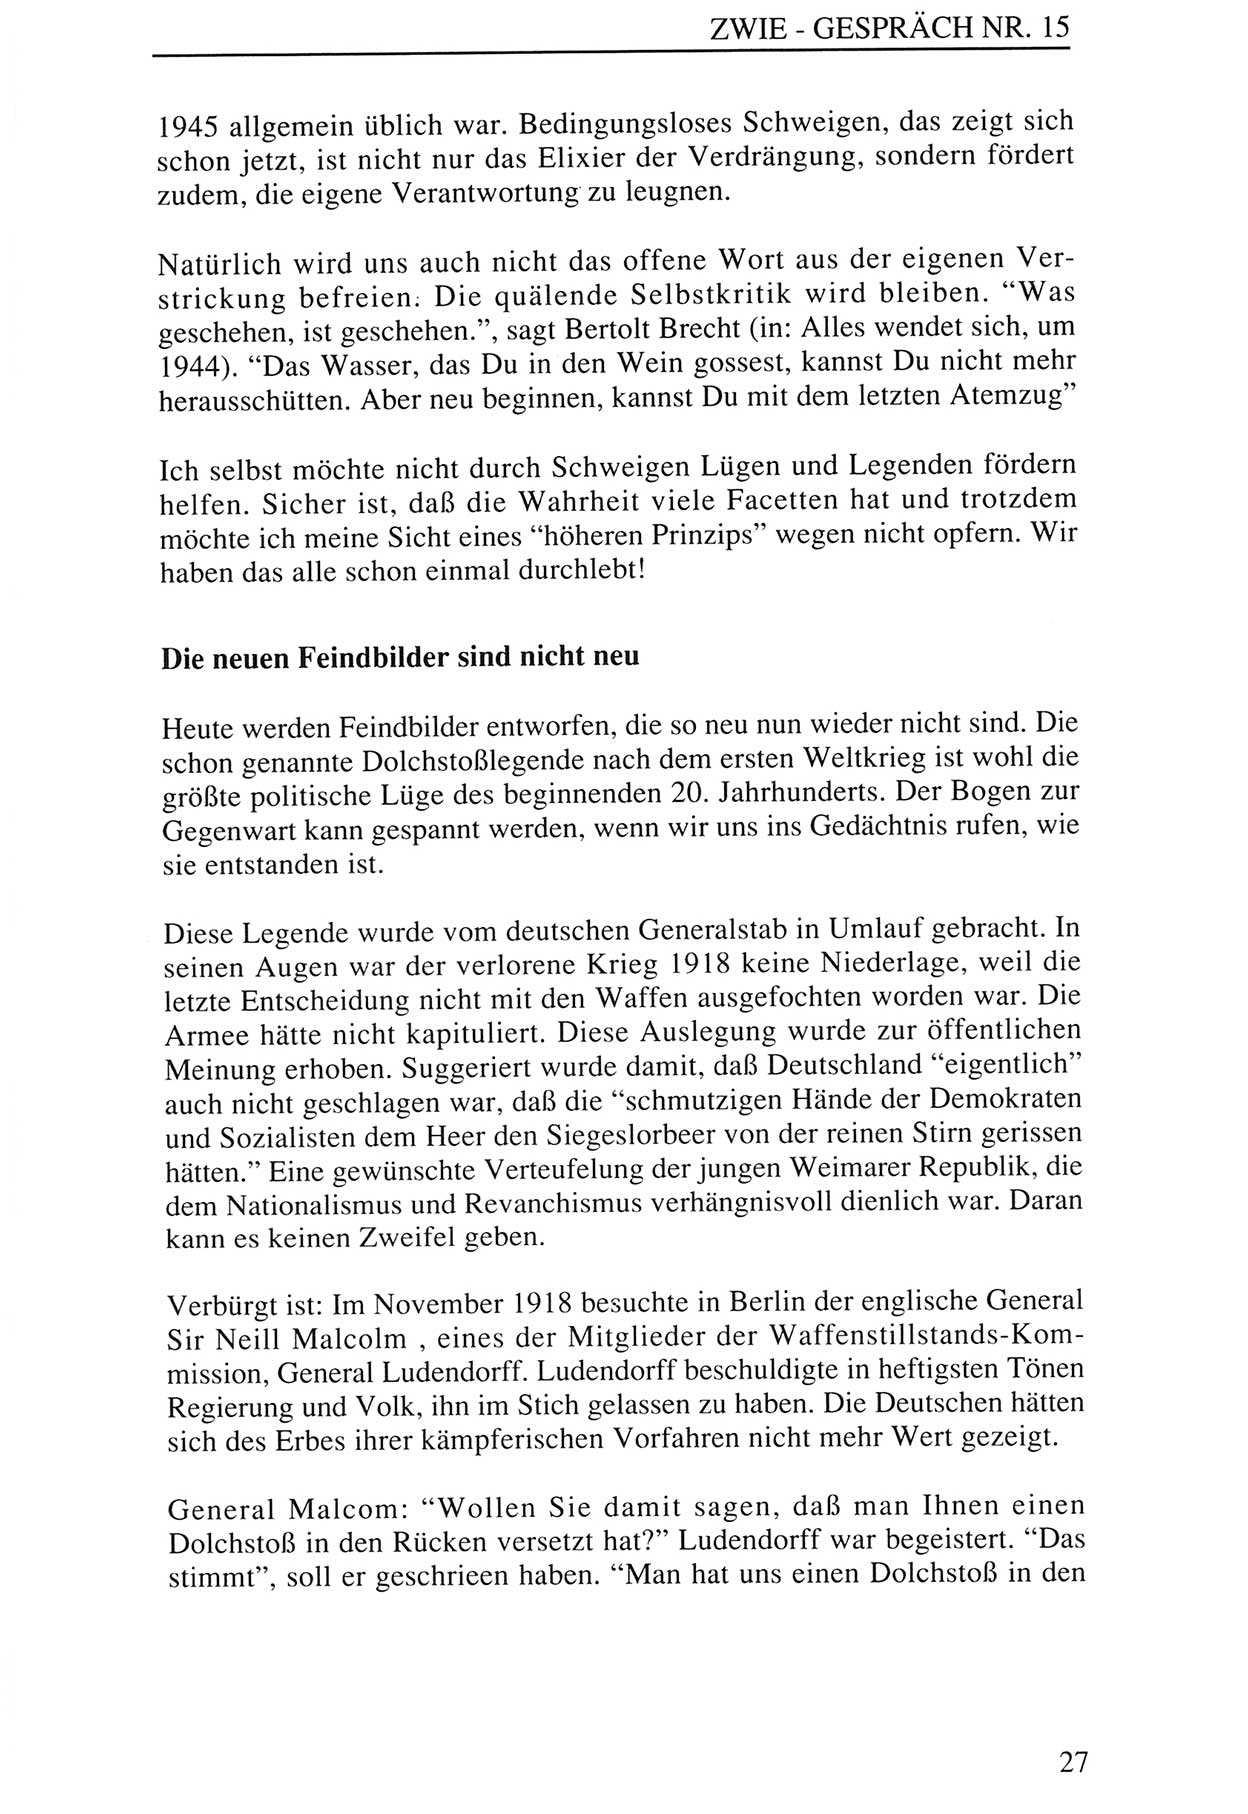 Zwie-Gespräch, Beiträge zur Aufarbeitung der Staatssicherheits-Vergangenheit [Deutsche Demokratische Republik (DDR)], Ausgabe Nr. 15, Berlin 1993, Seite 27 (Zwie-Gespr. Ausg. 15 1993, S. 27)